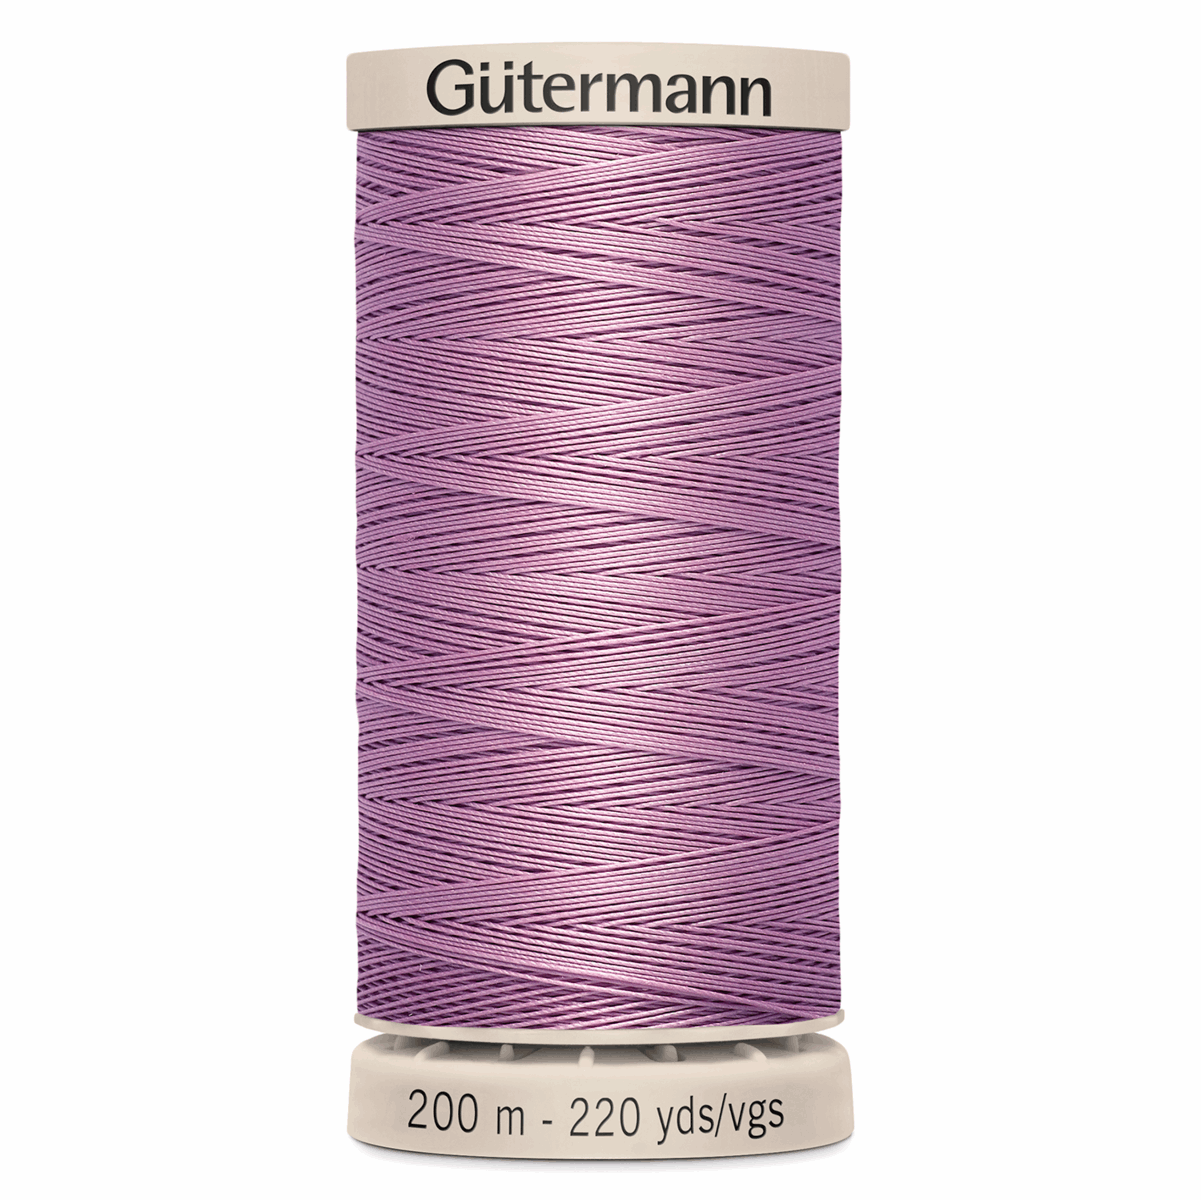 Gutermann Quilting Thread 200m - Colour 3526